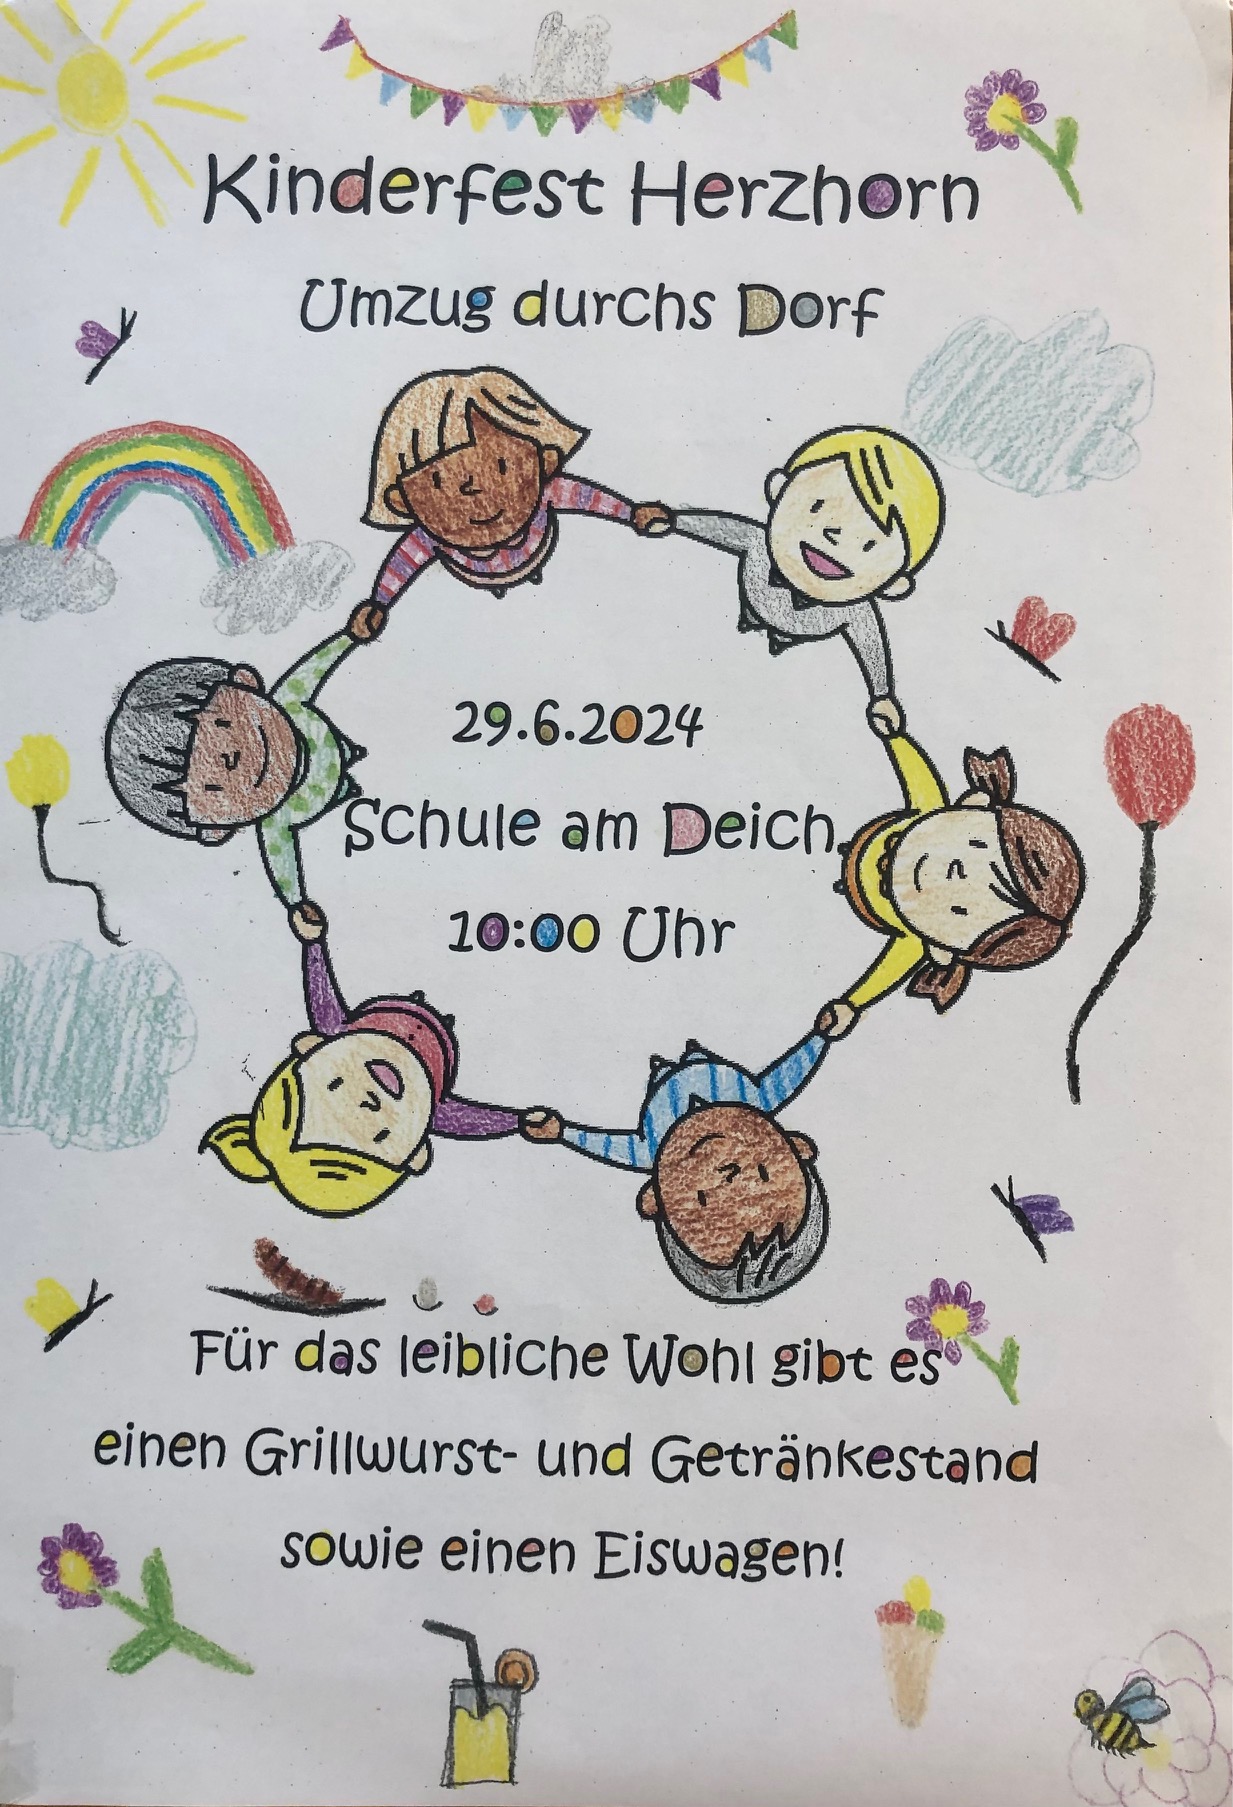 Kinderfest in Herzhorn